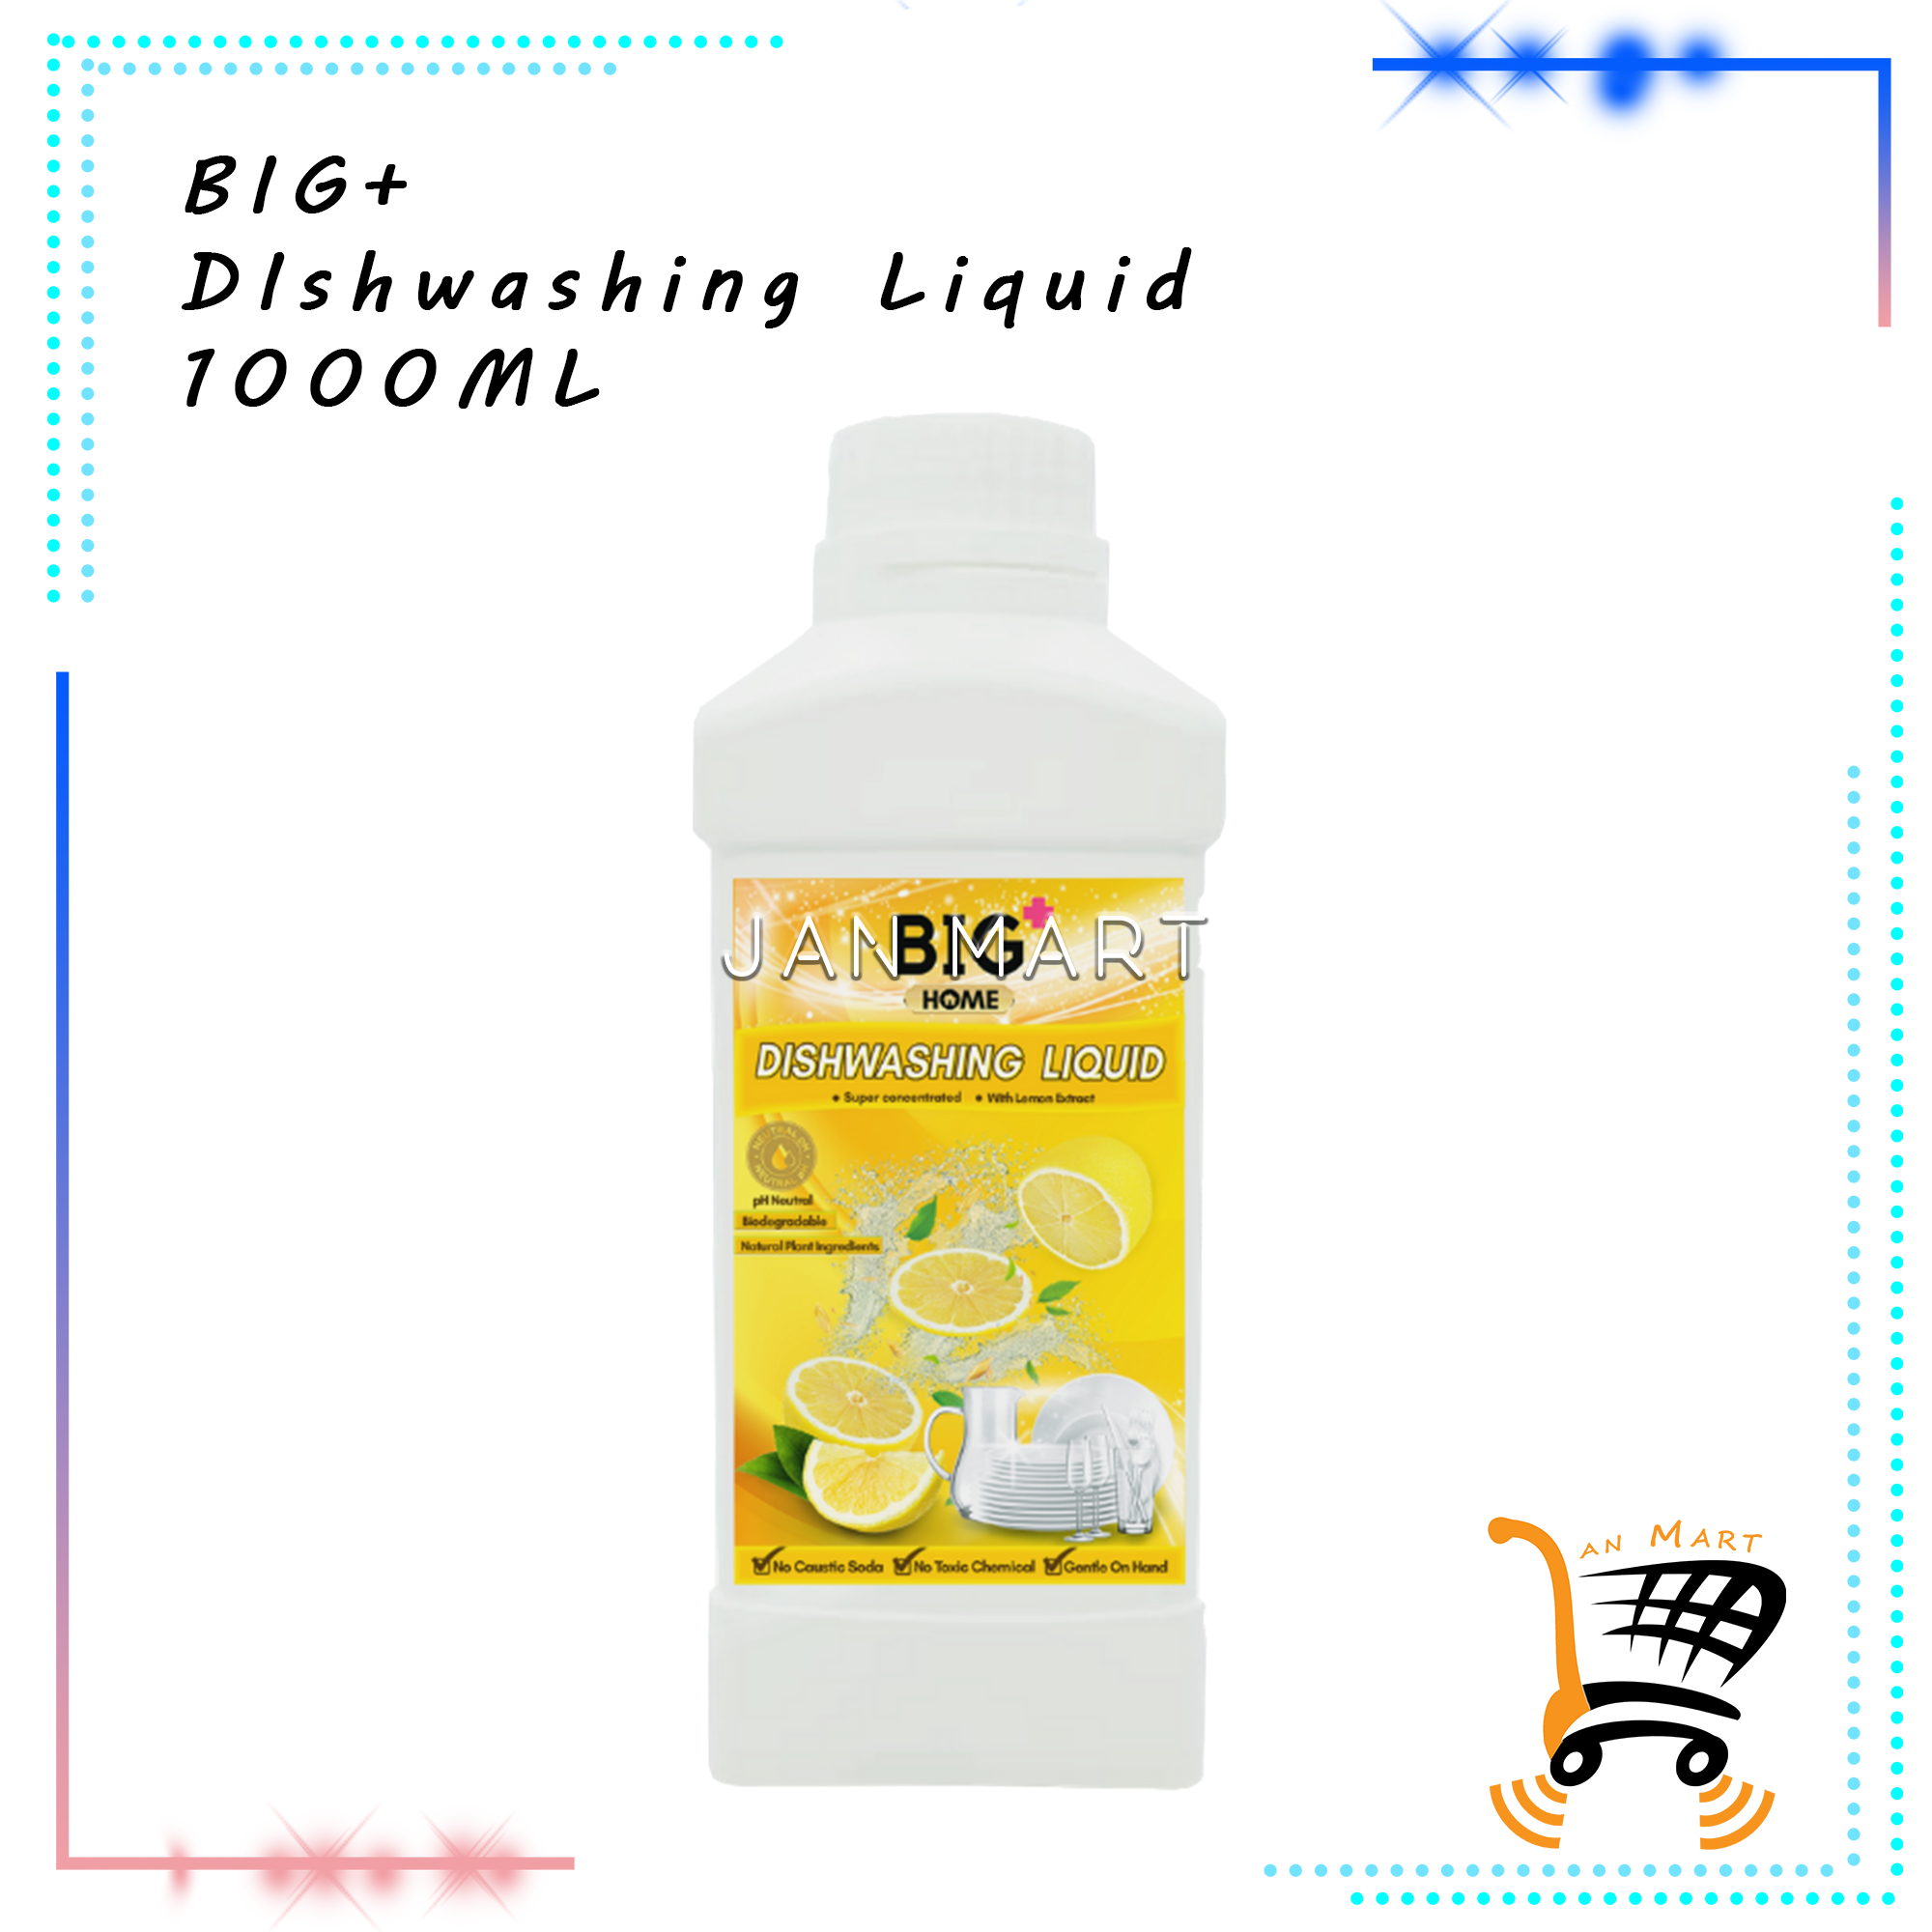 BIG+ Dishwashing Liquid 1000ML